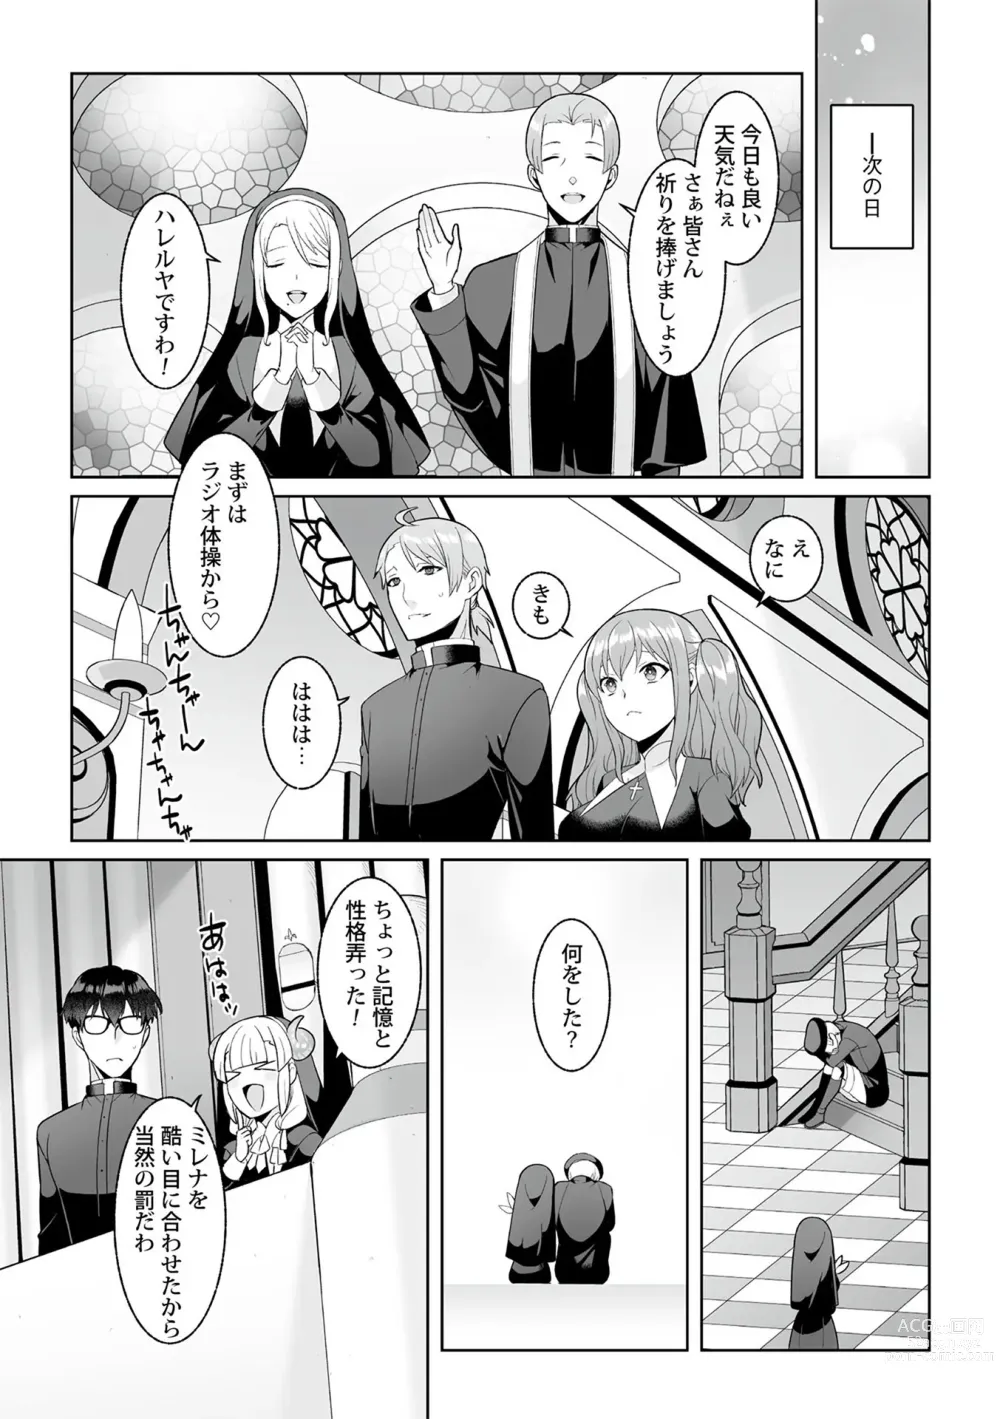 Page 211 of manga Tsukitei no Seijo Inmitsu no Utage 1